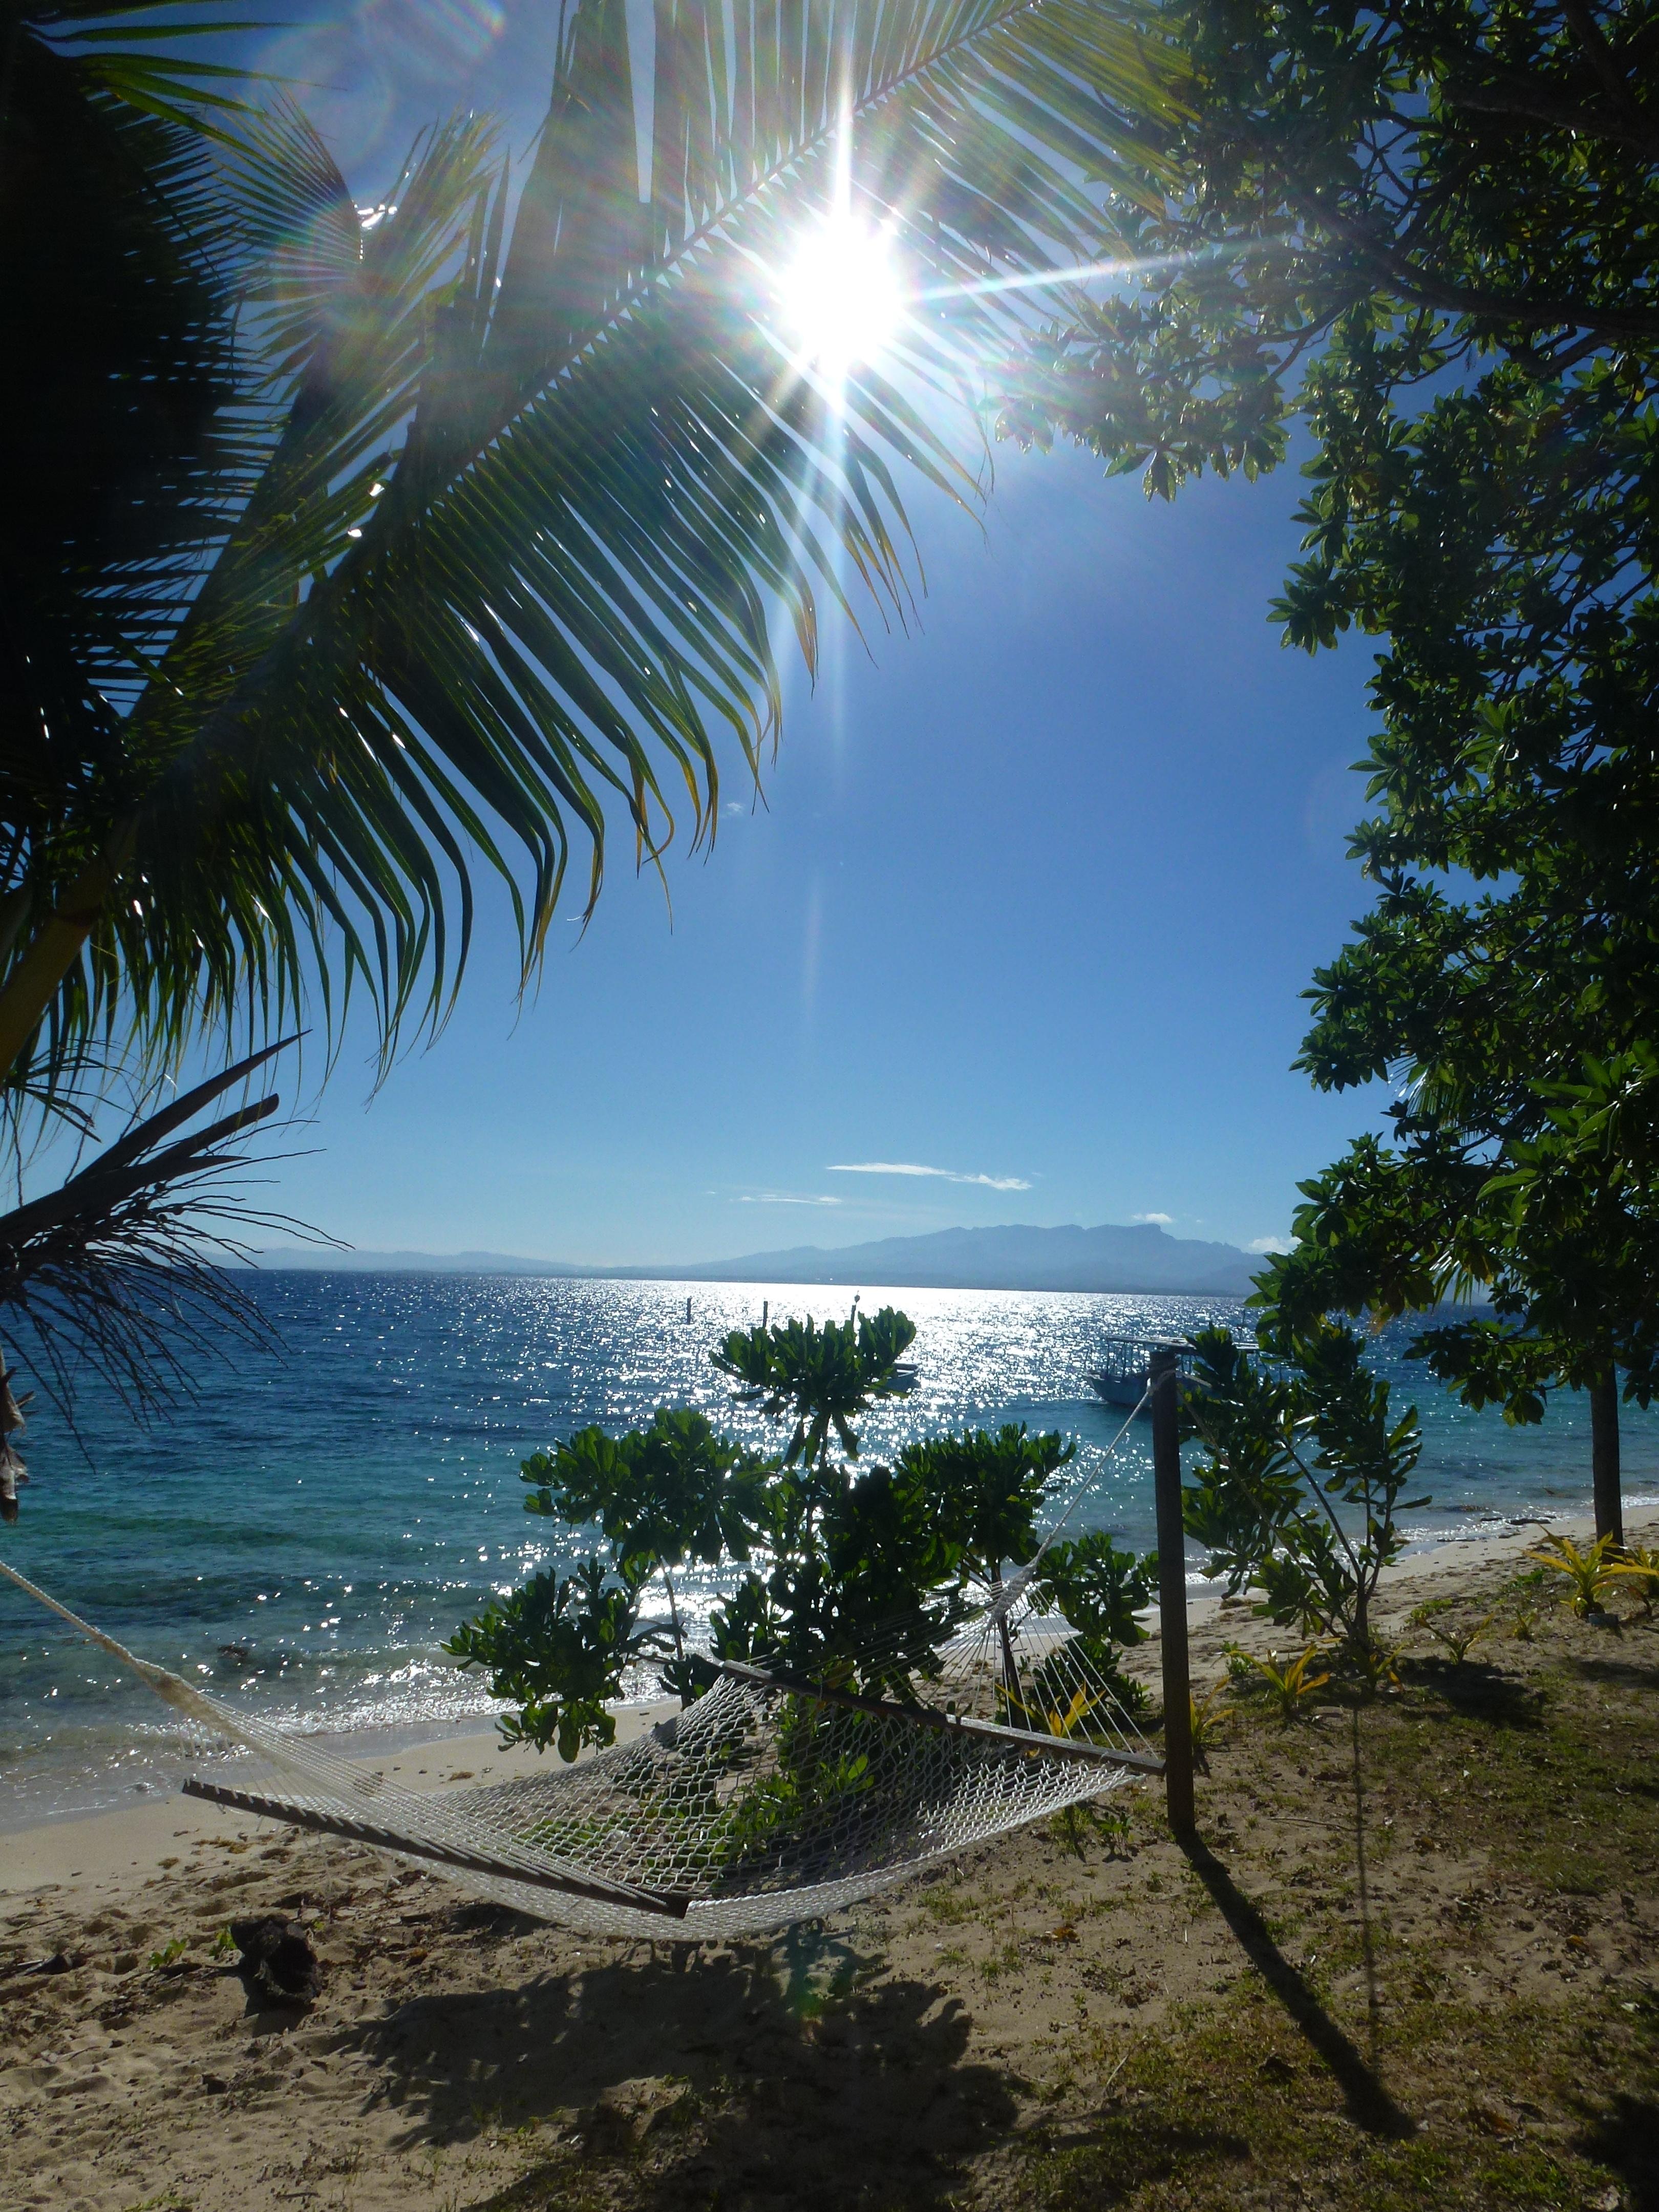 Hier würde ich gern wieder aufwachen... Good morning #Fiji!
#travel #weltreise #summerstyle